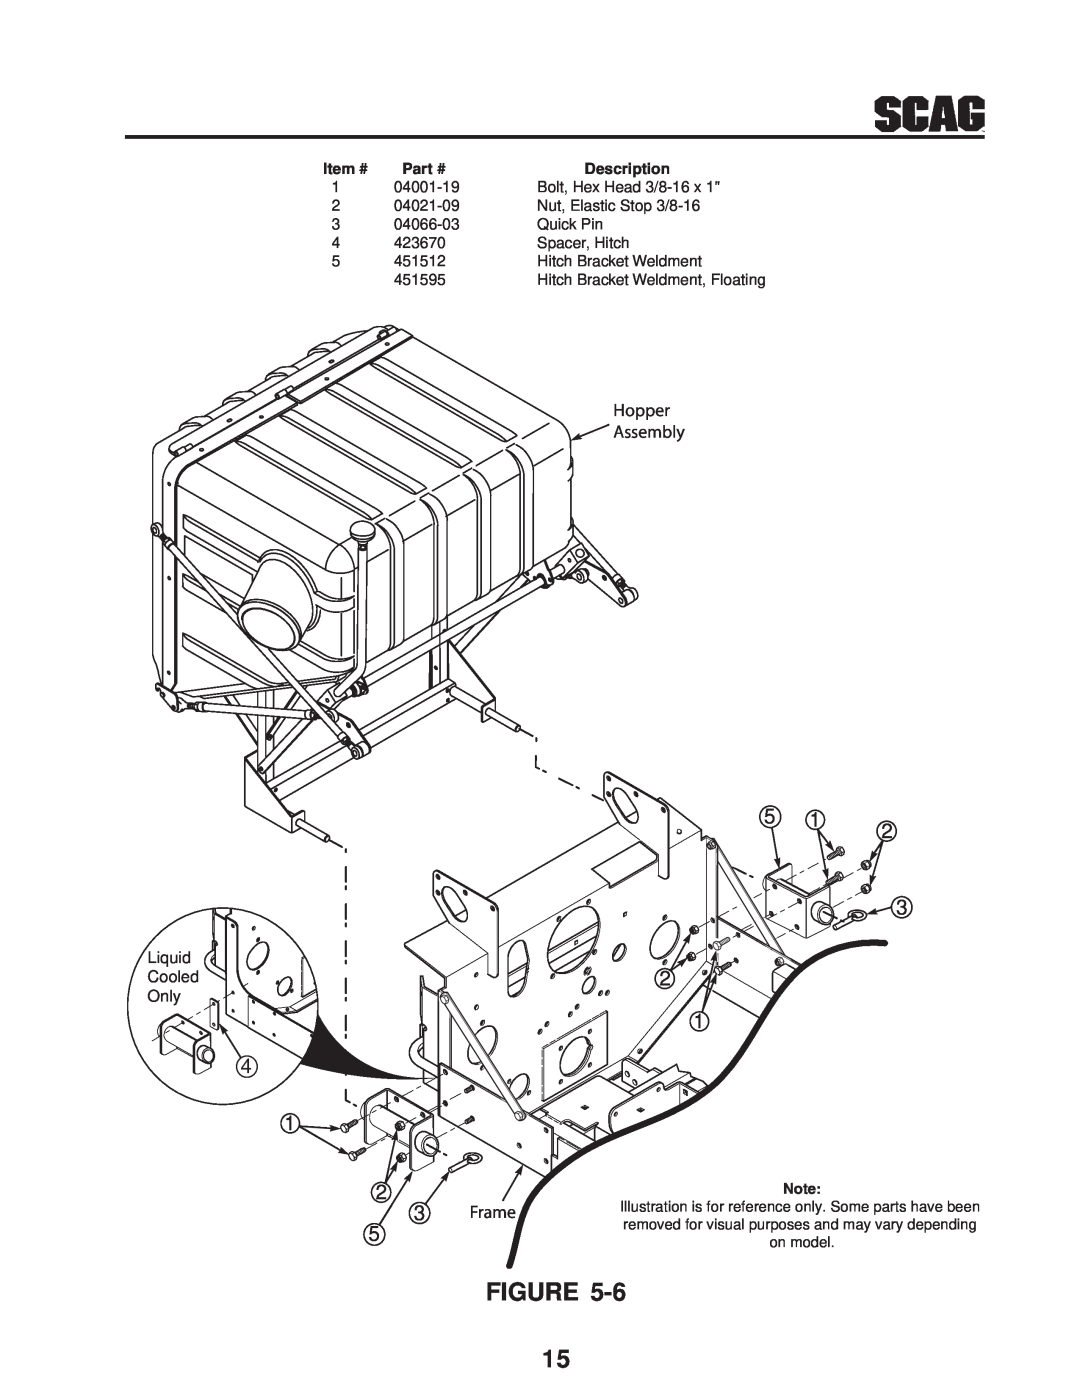 Scag Power Equipment GC-STT-CS manual Hopper Assembly, Frame, Description 